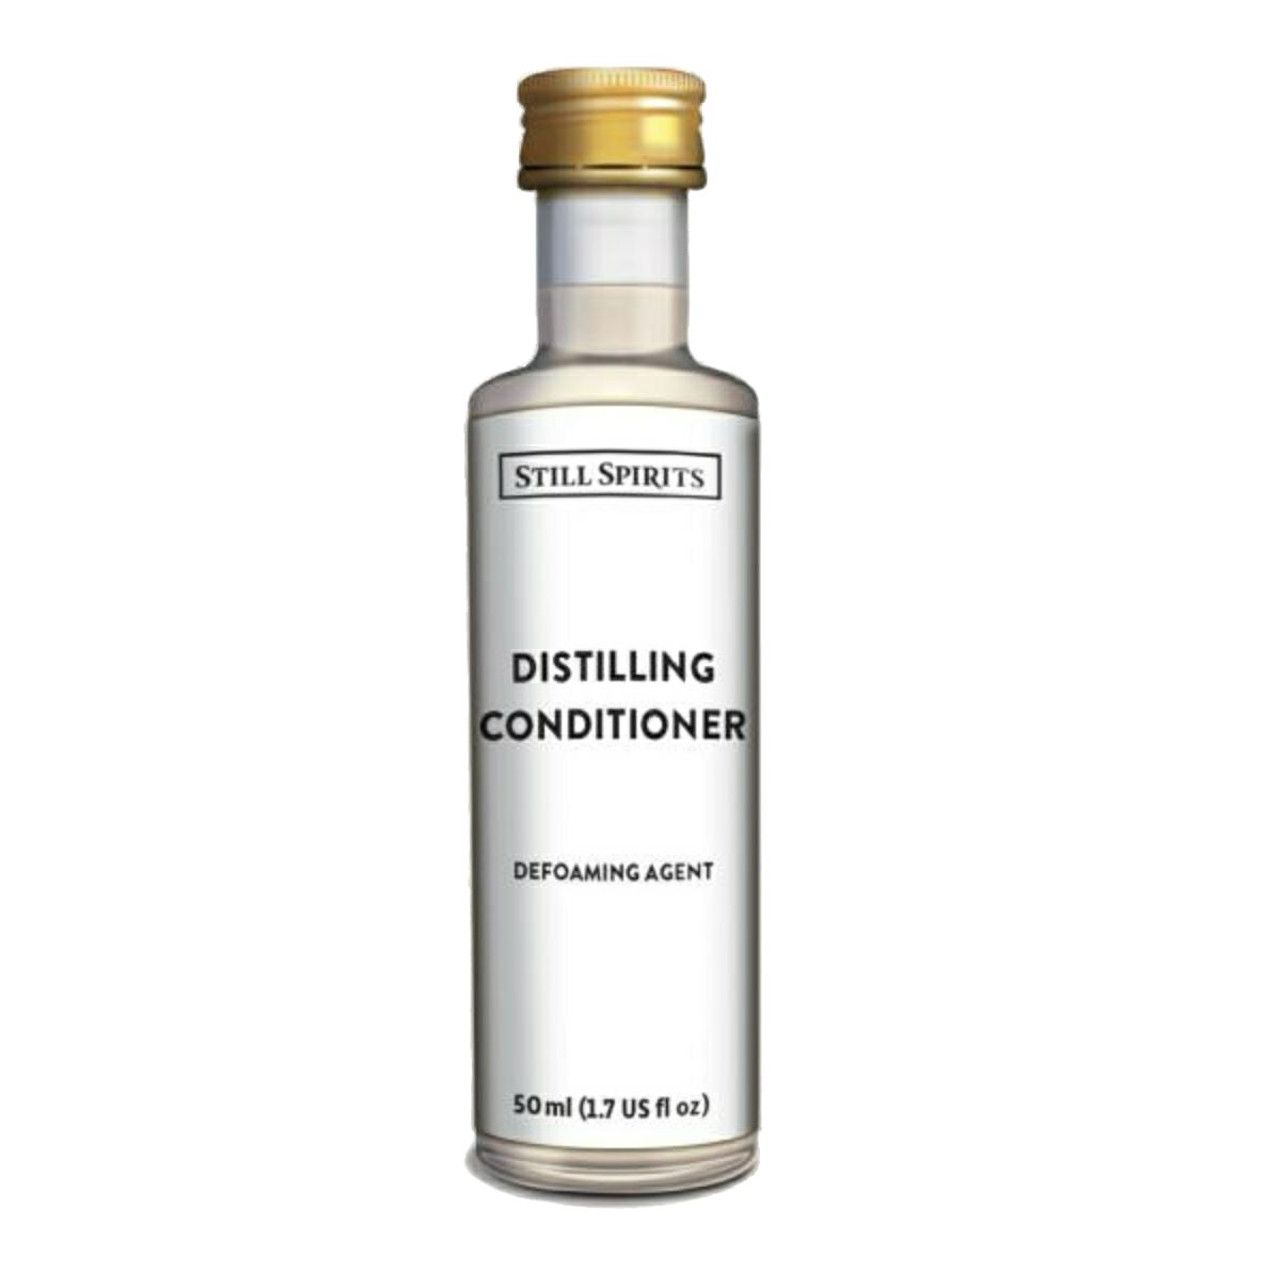 Still Spirits Top Shelf Distilling Conditioner Defoaming Agent